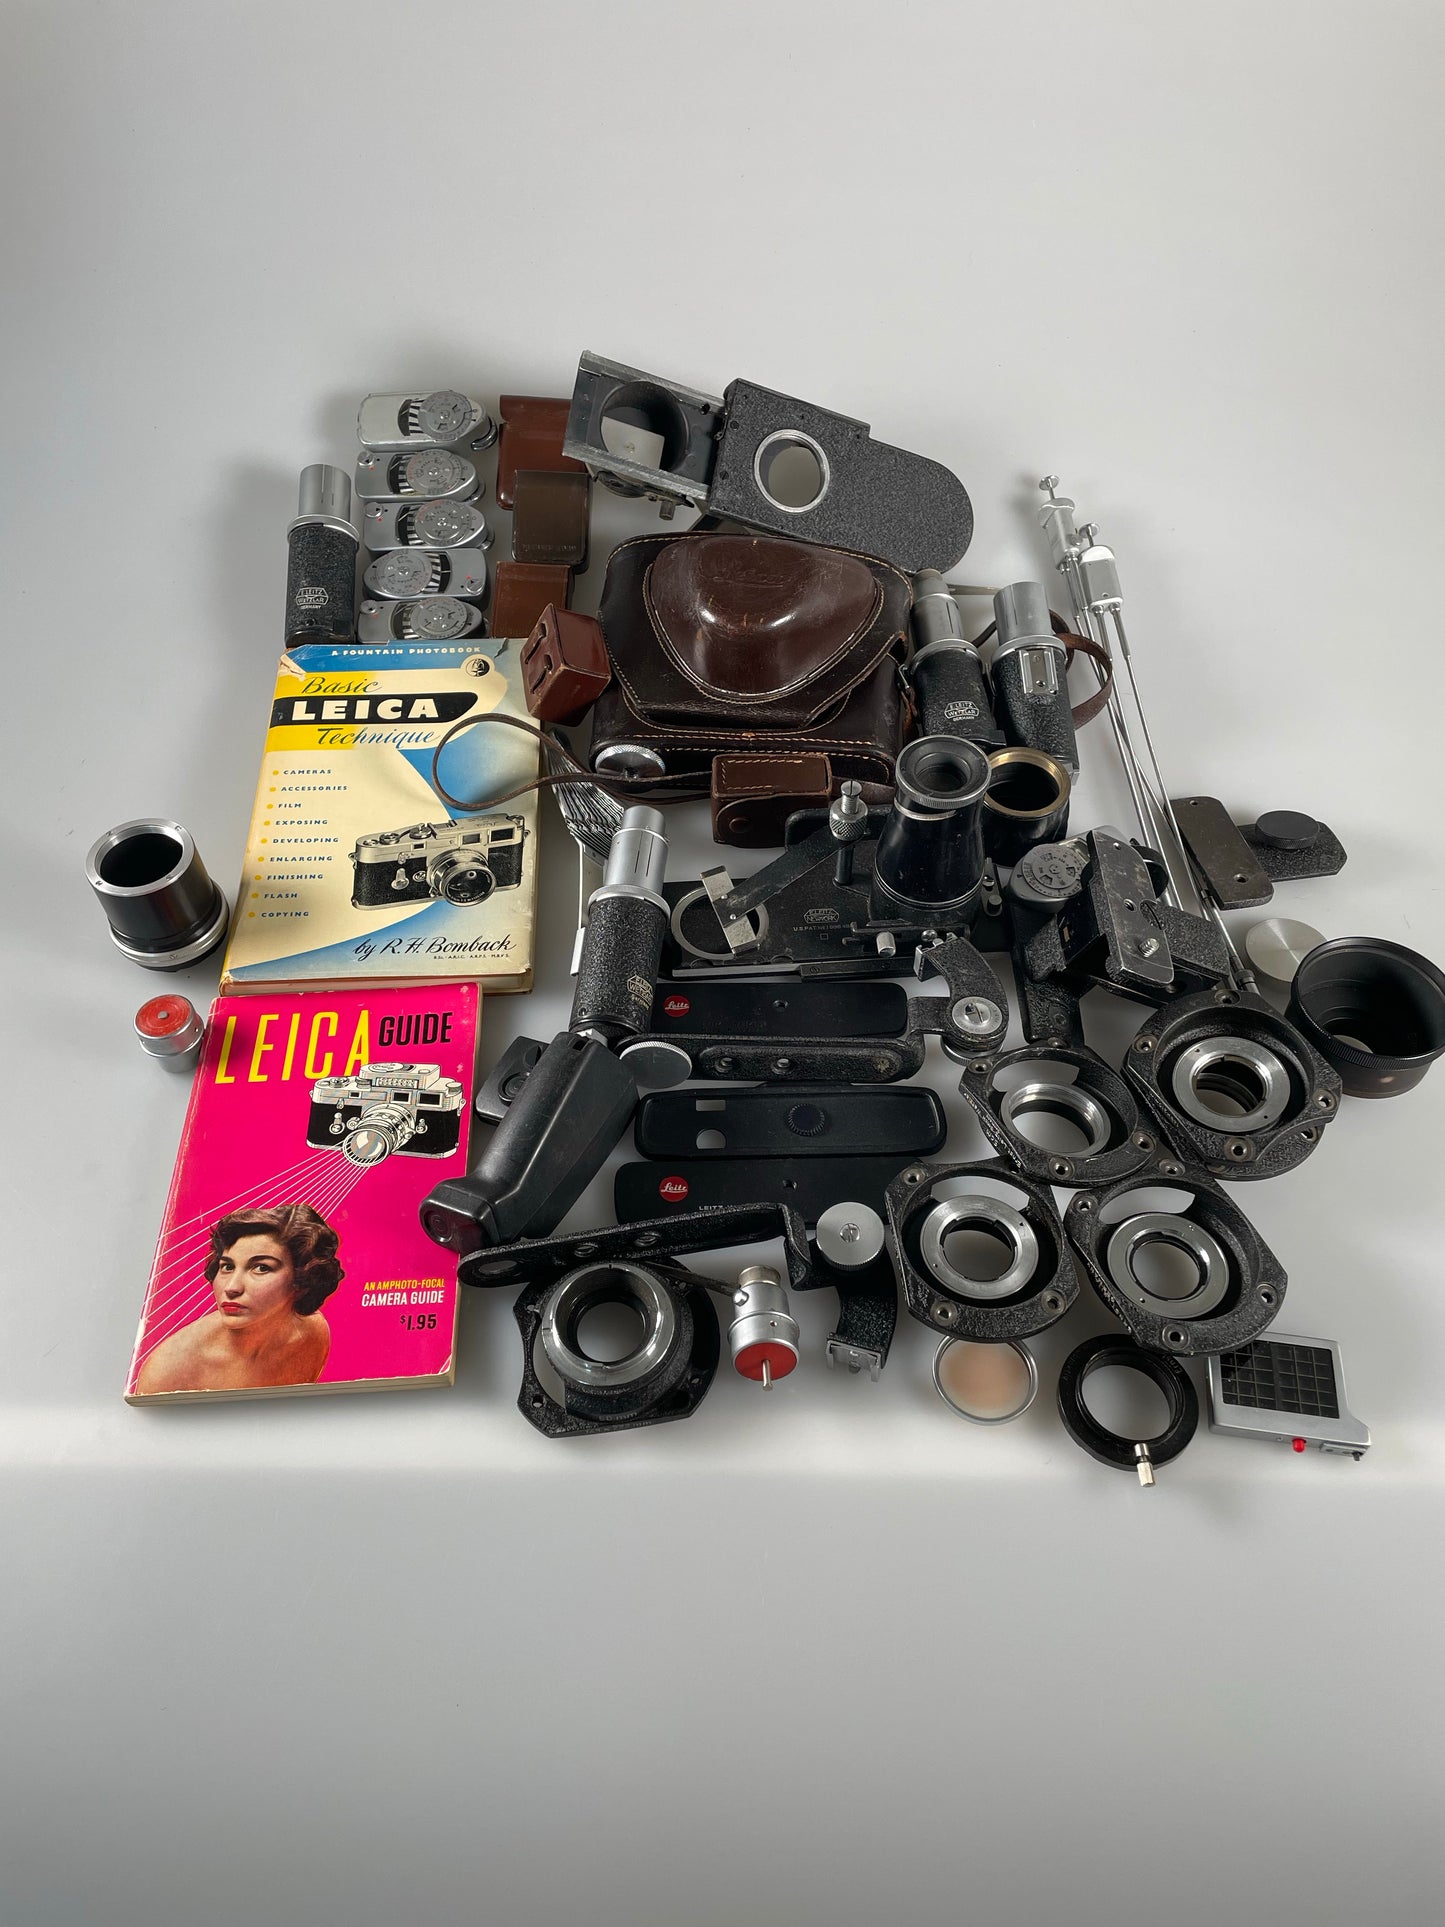 Lot of Leitz Leica Accessories - meter, flash, case, book, etc